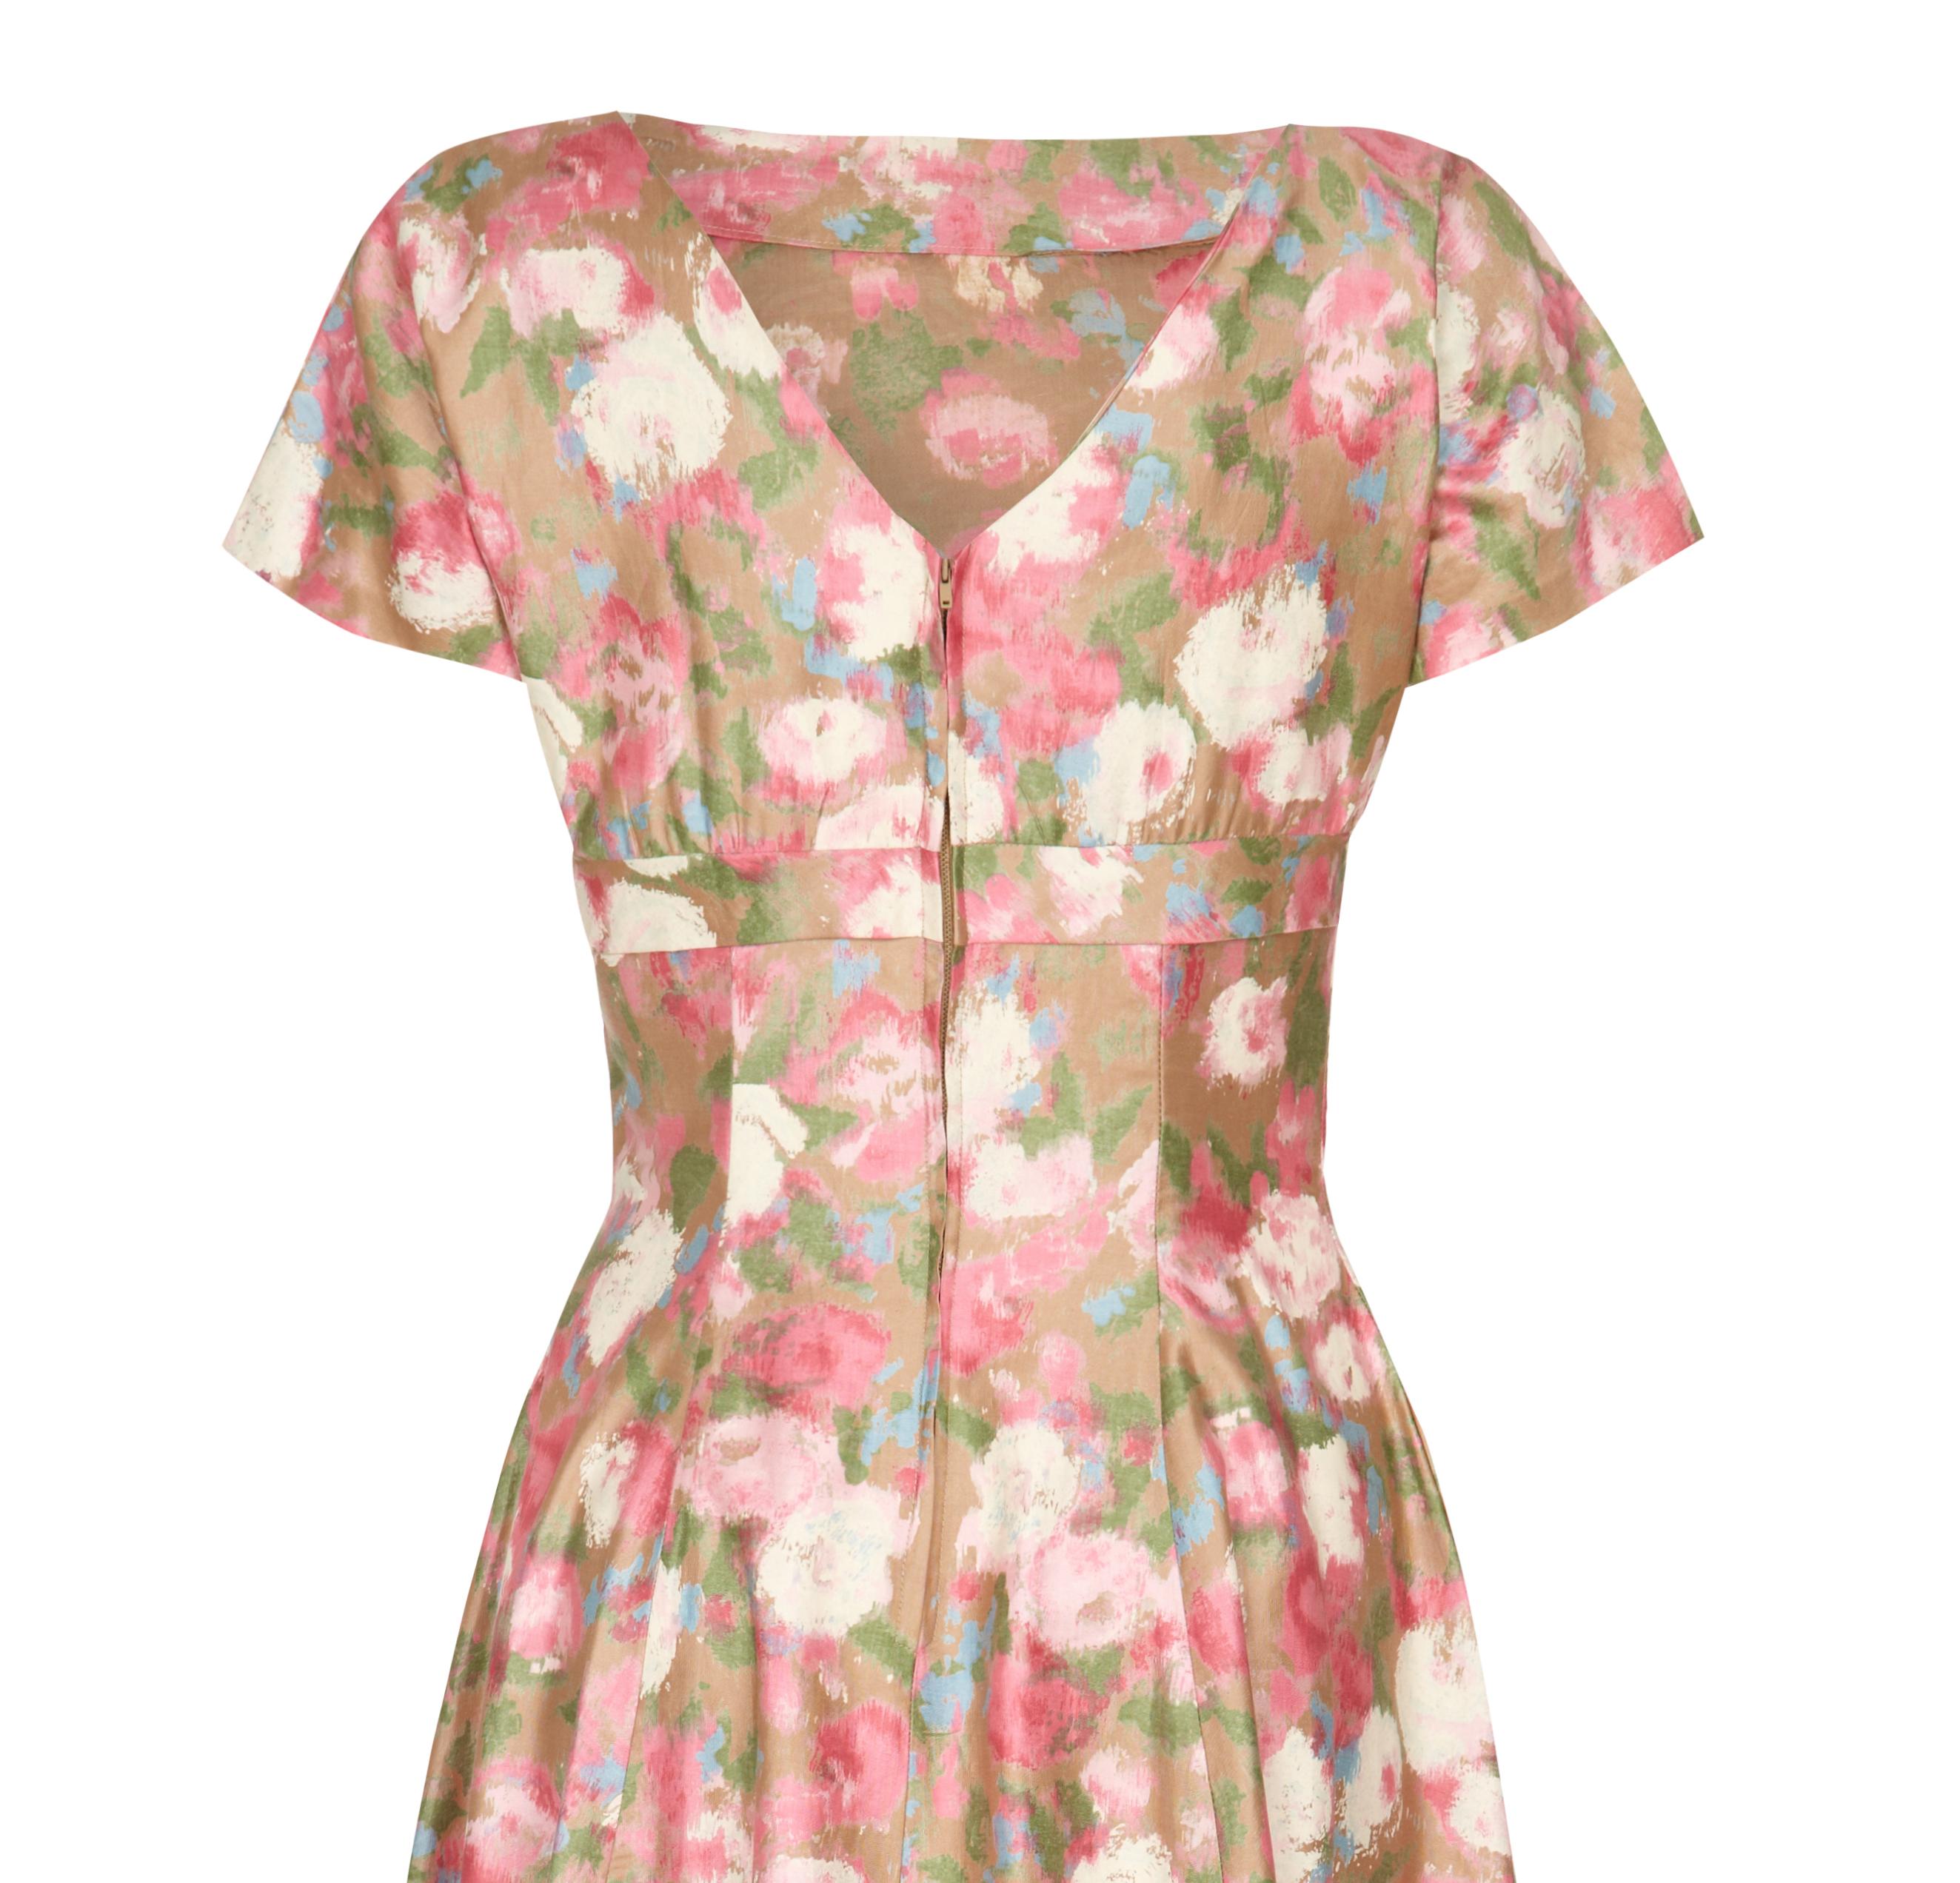 Beige 1950s Polished Cotton Floral Dress